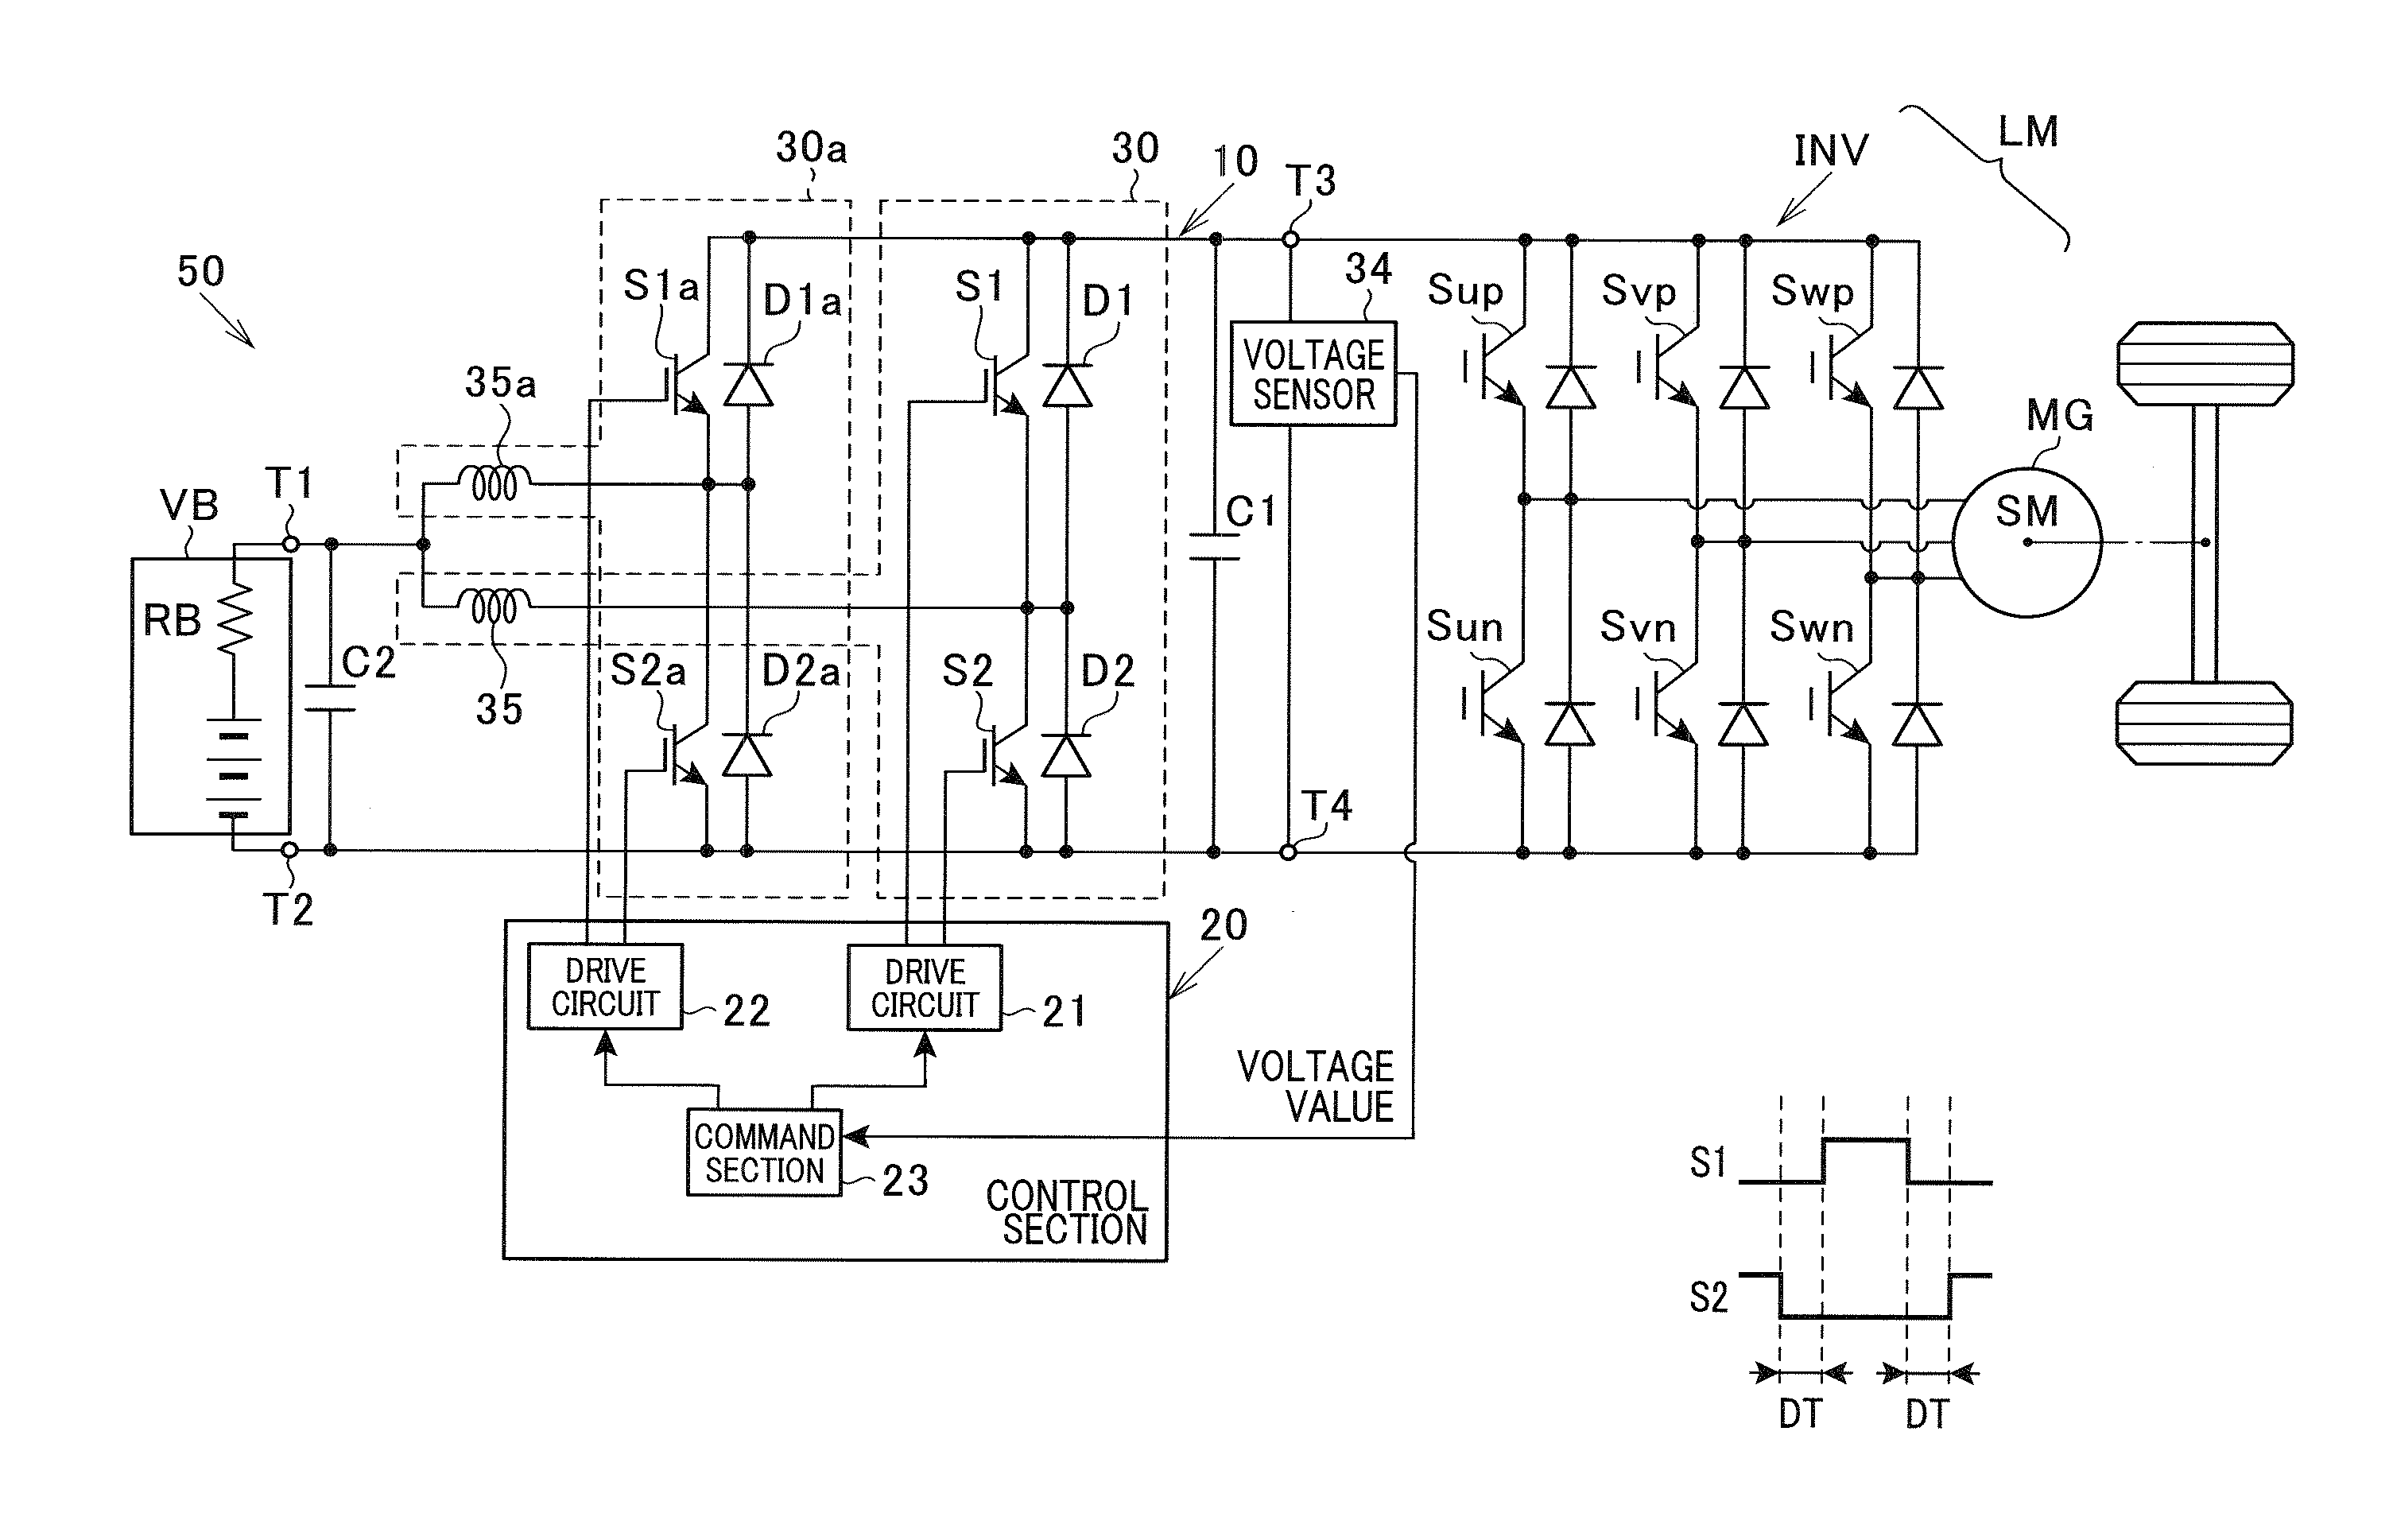 Voltage converter and voltage converter system including voltage converter